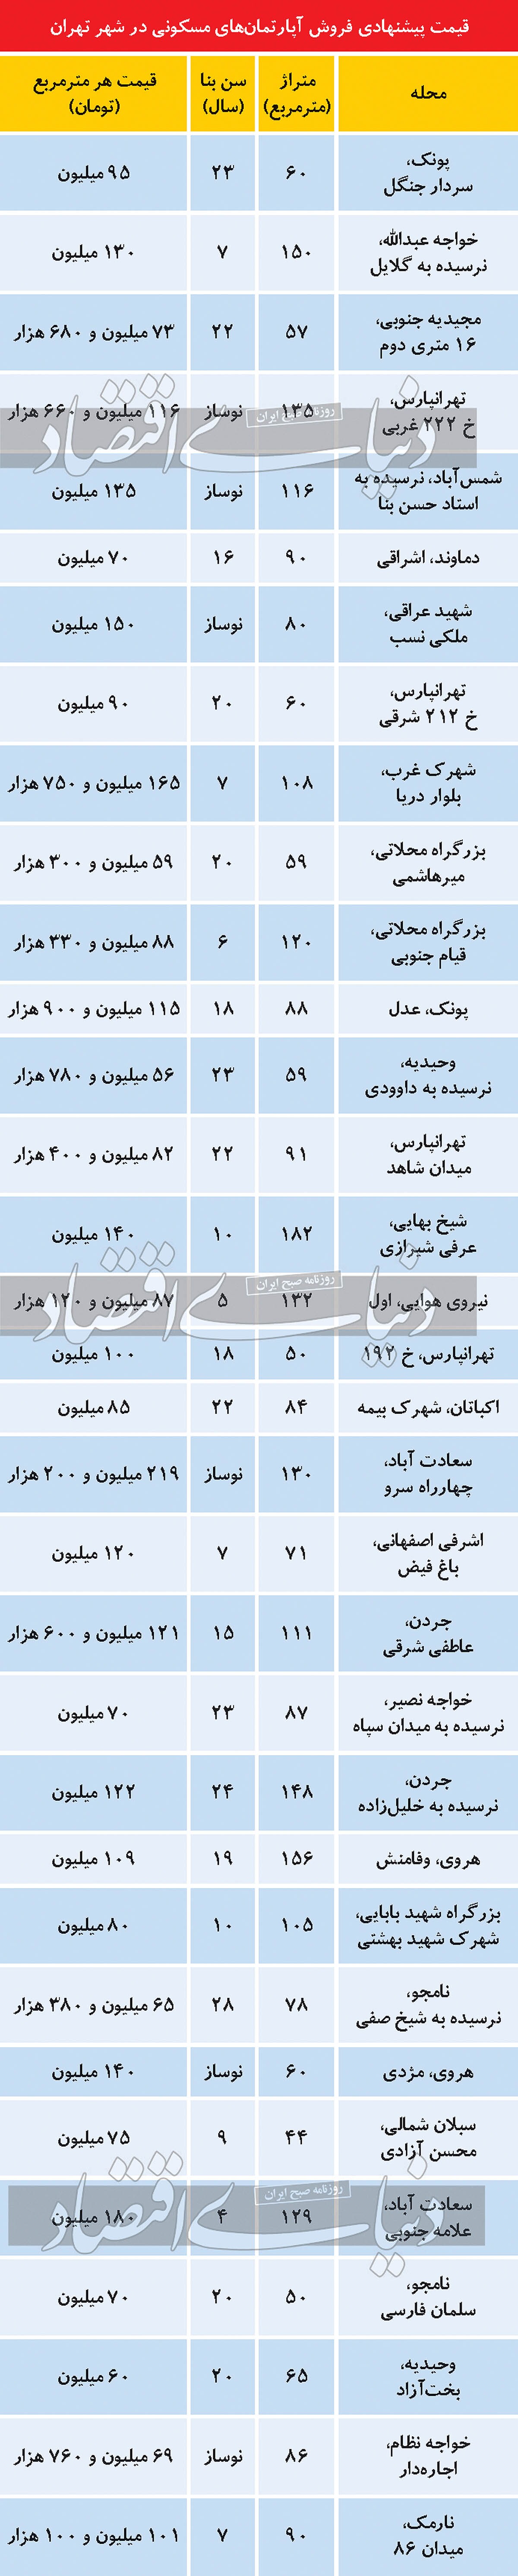 وضعیت تنوع فایل فروش ملک در بازار تهران